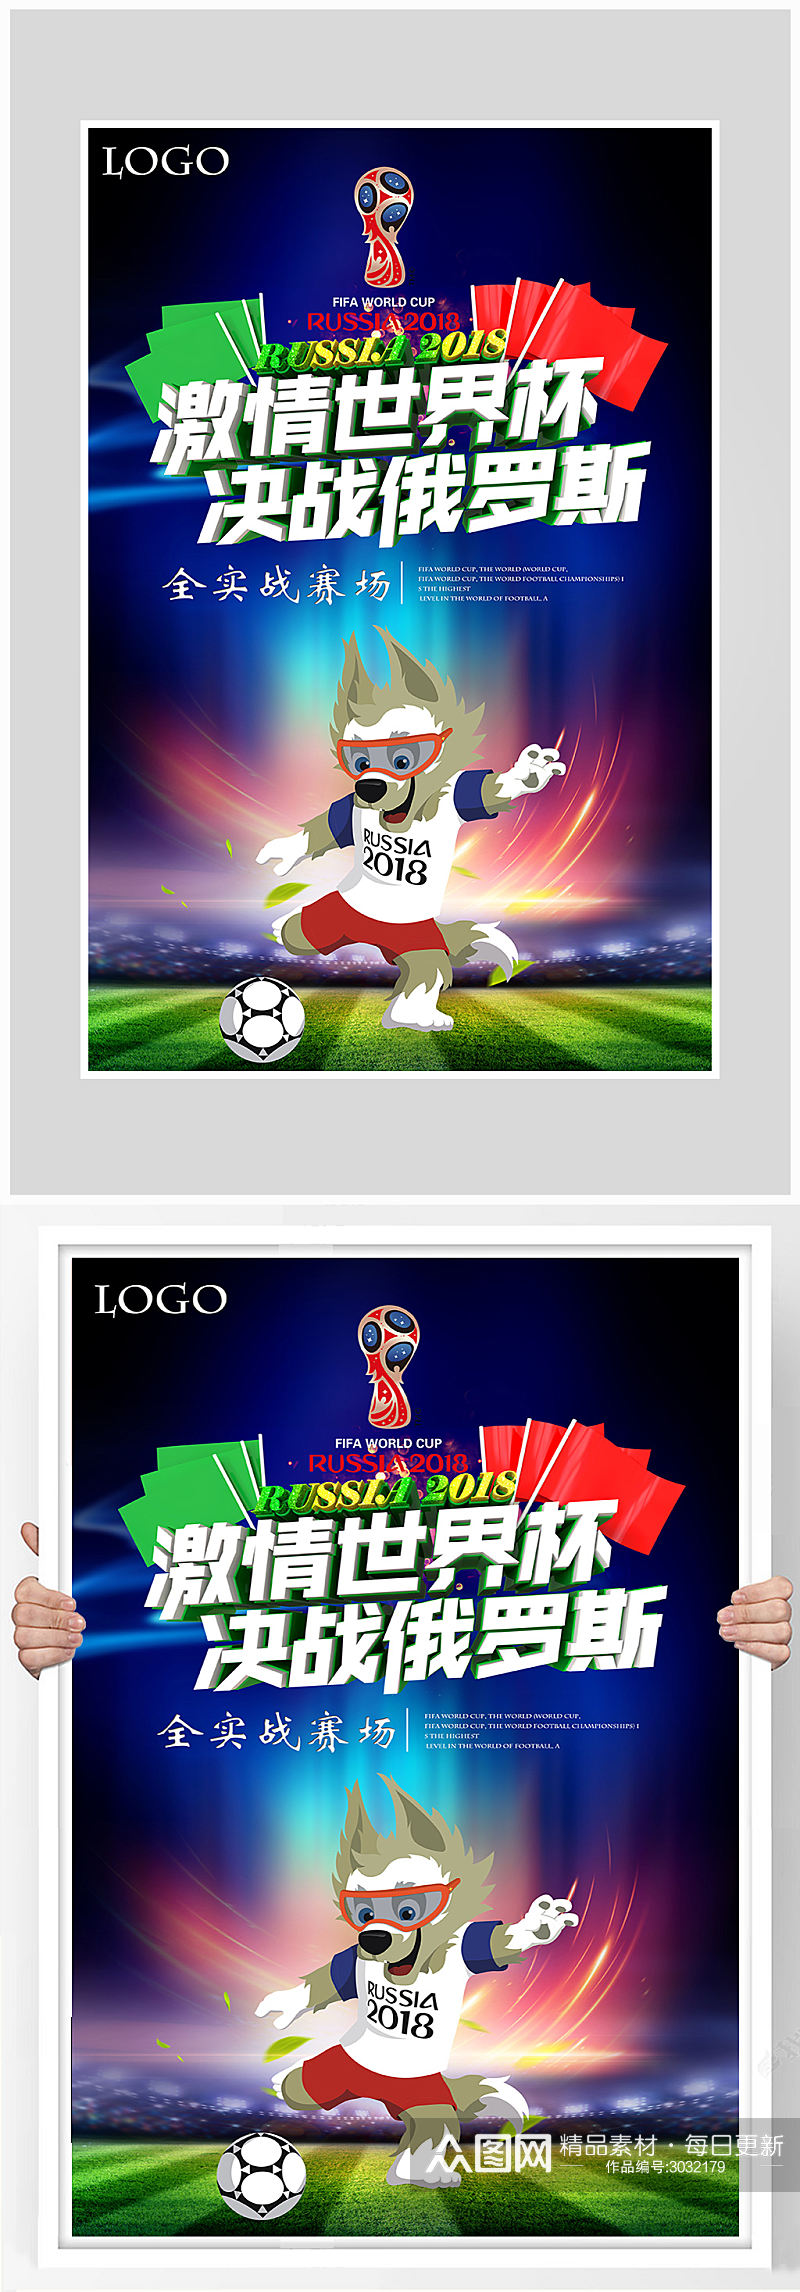 创意世界杯足球比赛海报设计素材